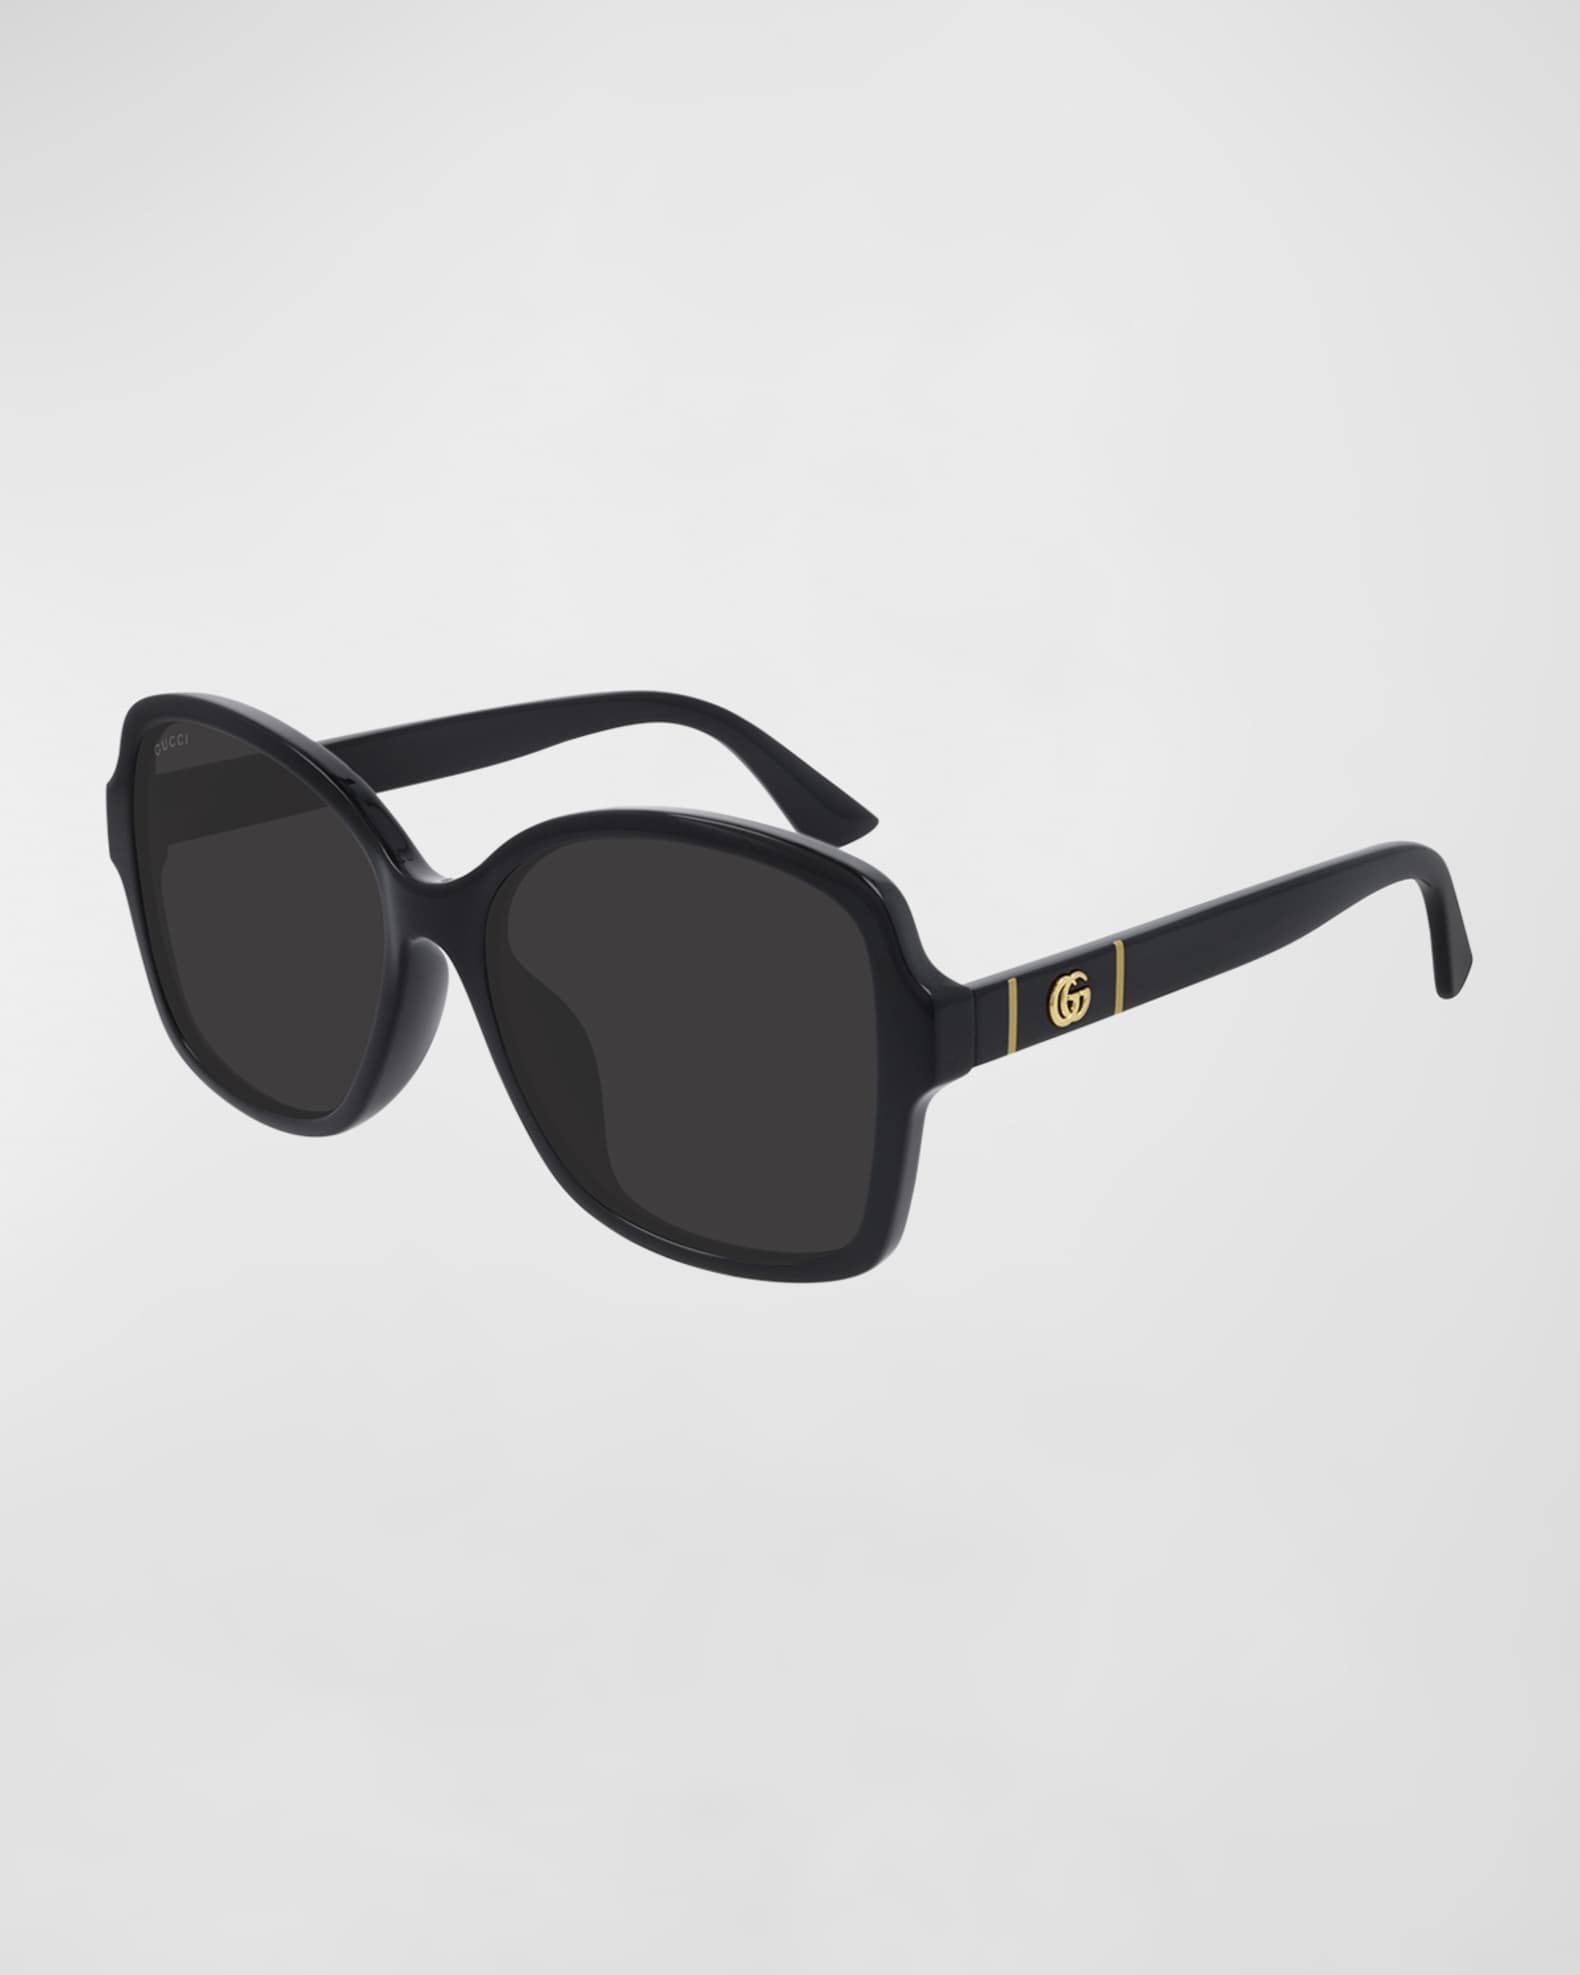 Gucci Square Monochromatic Sunglasses | Neiman Marcus